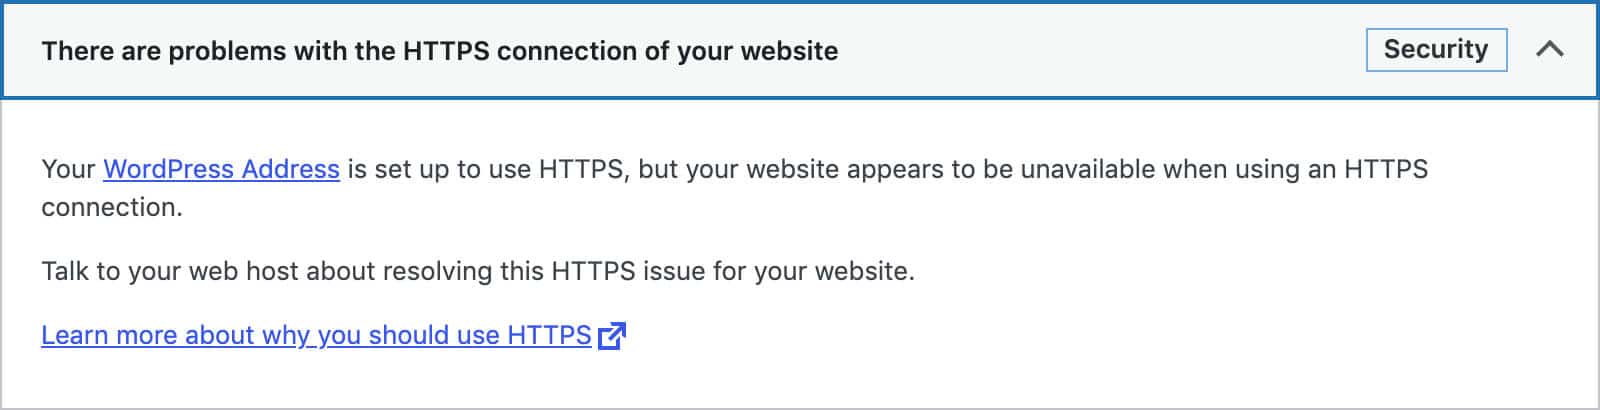 HTTPS wird nicht unterstützt